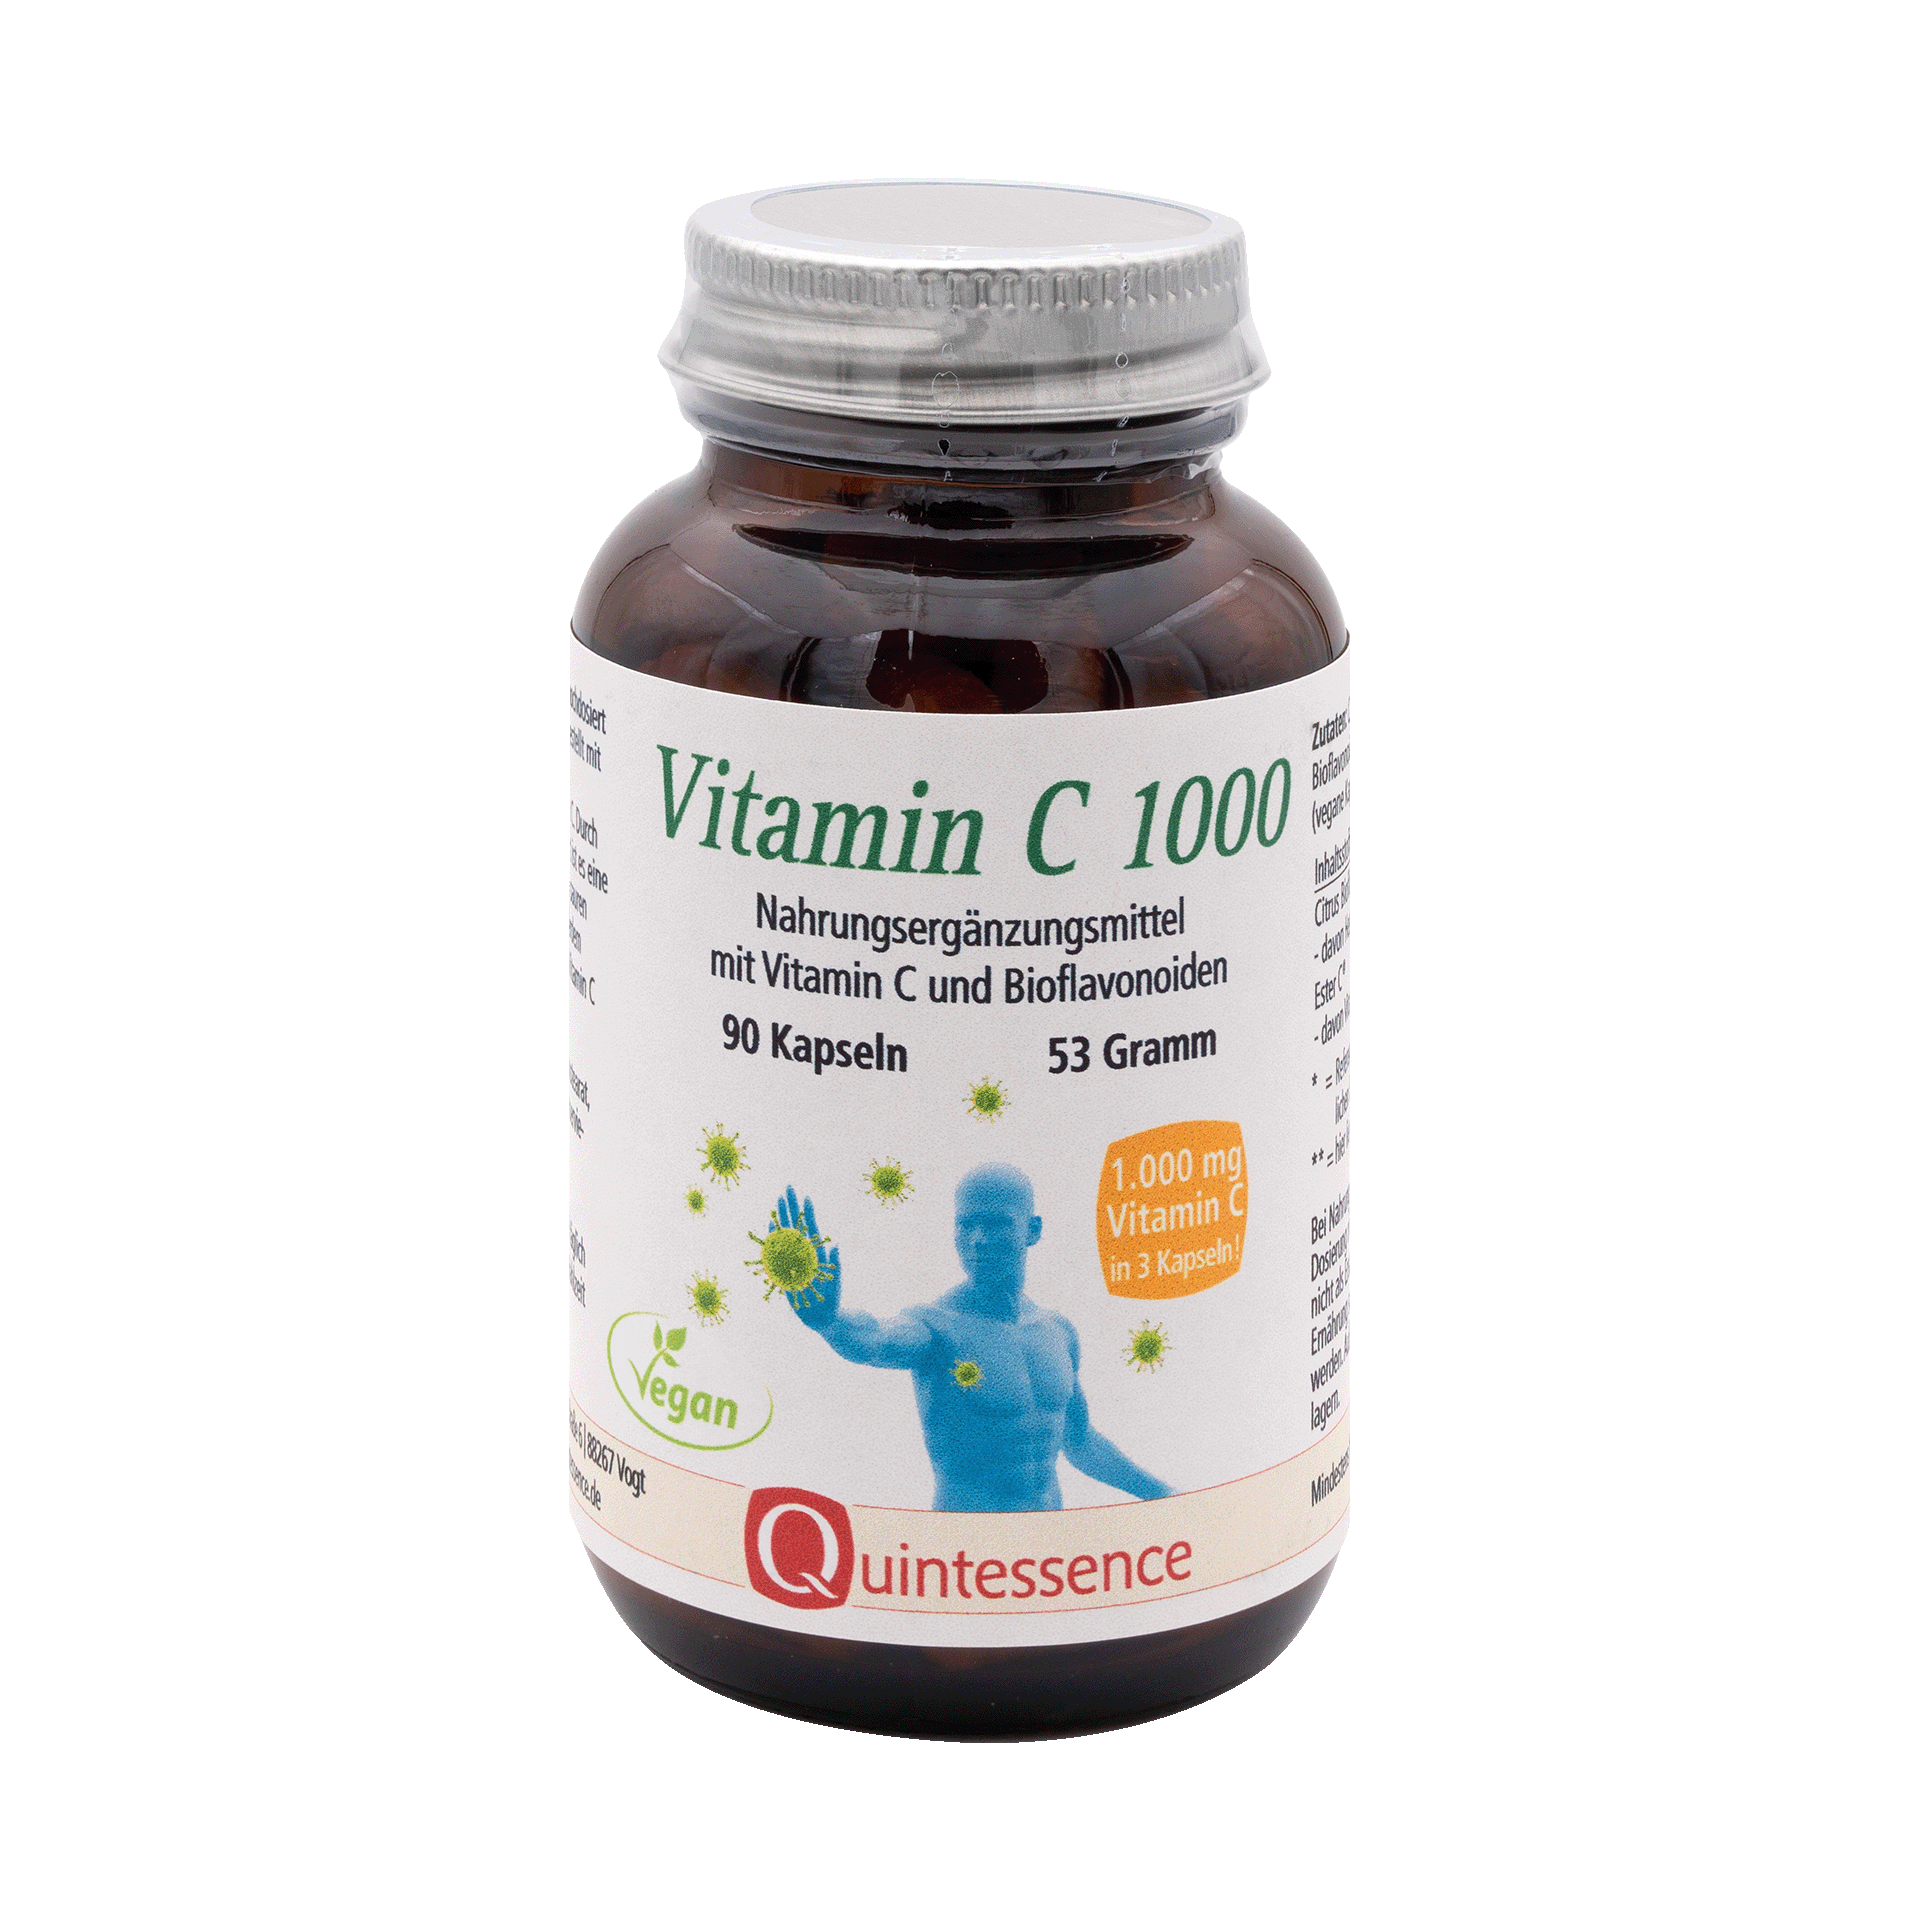 Vitamin C 1000, 90 Kapseln